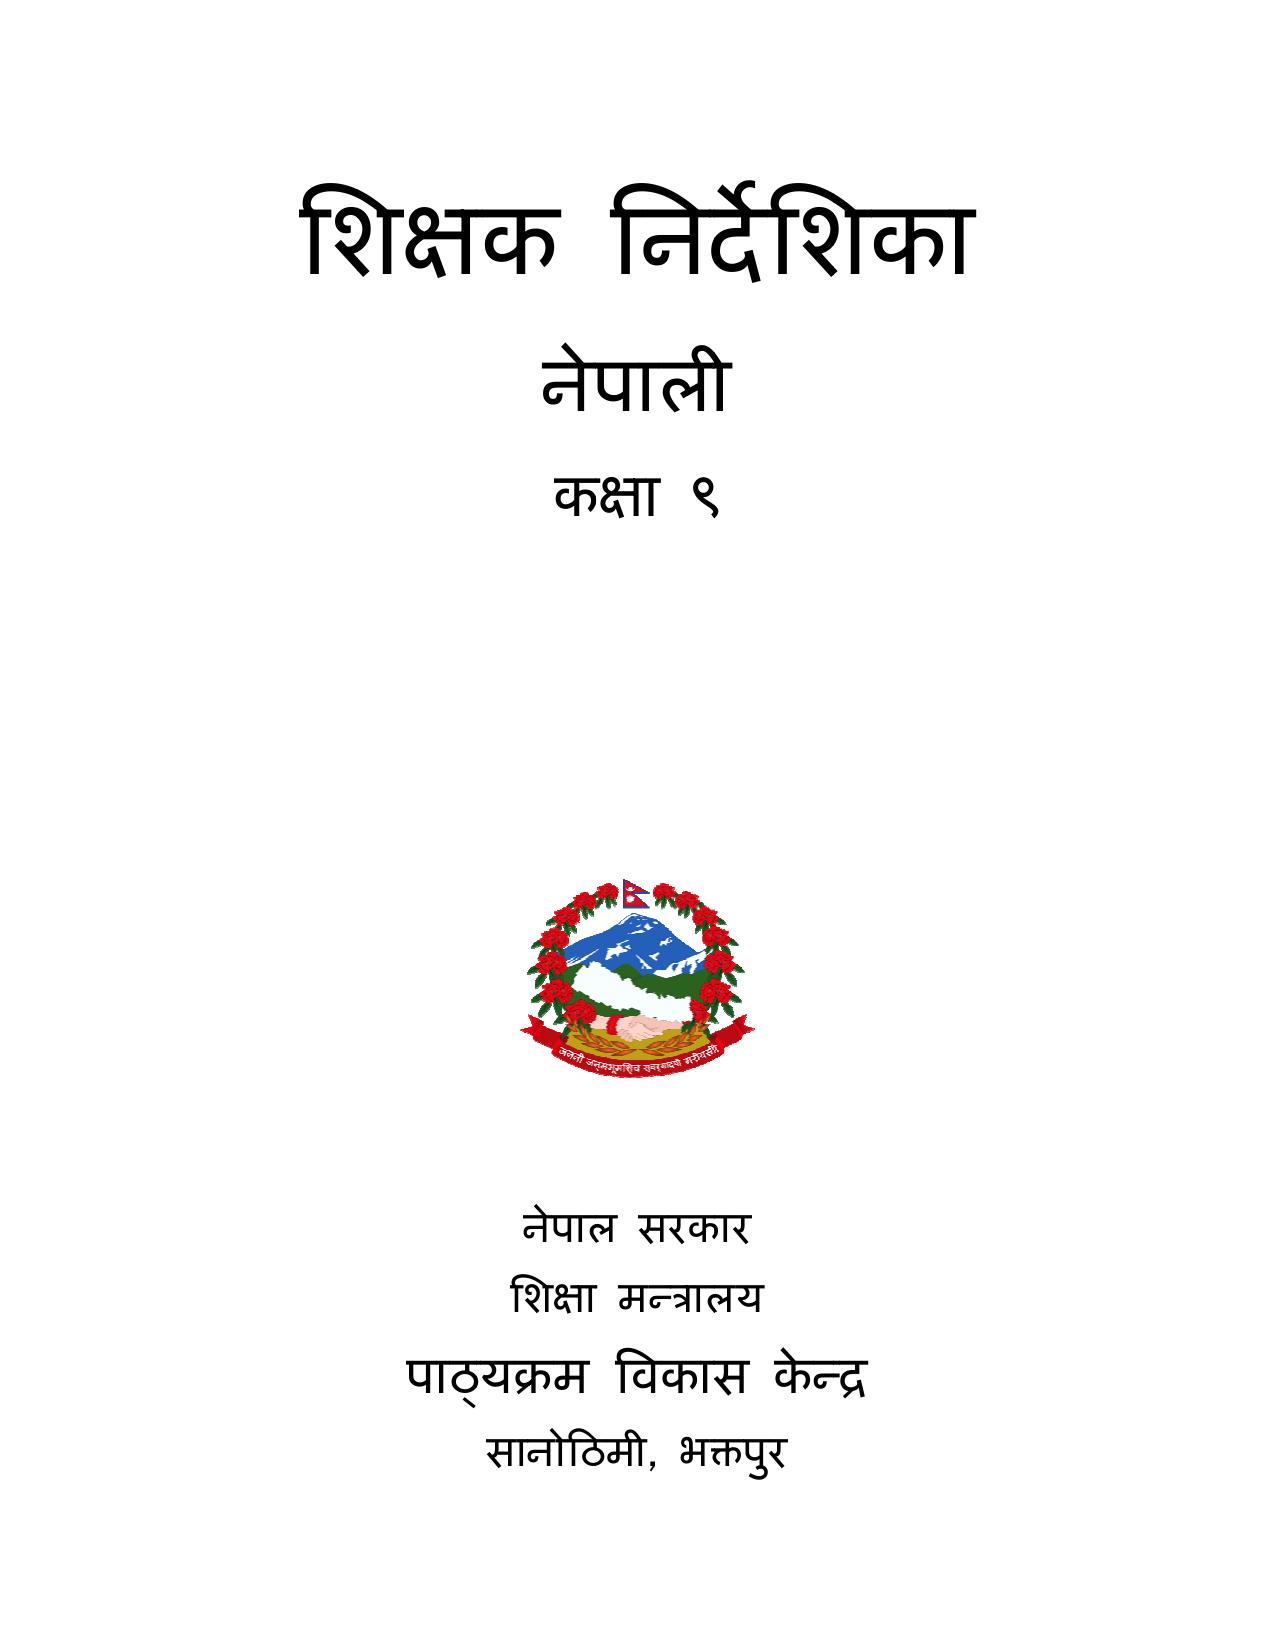 CDC 2017 - नेपाली शिक्षक निर्देशिका कक्षा ९